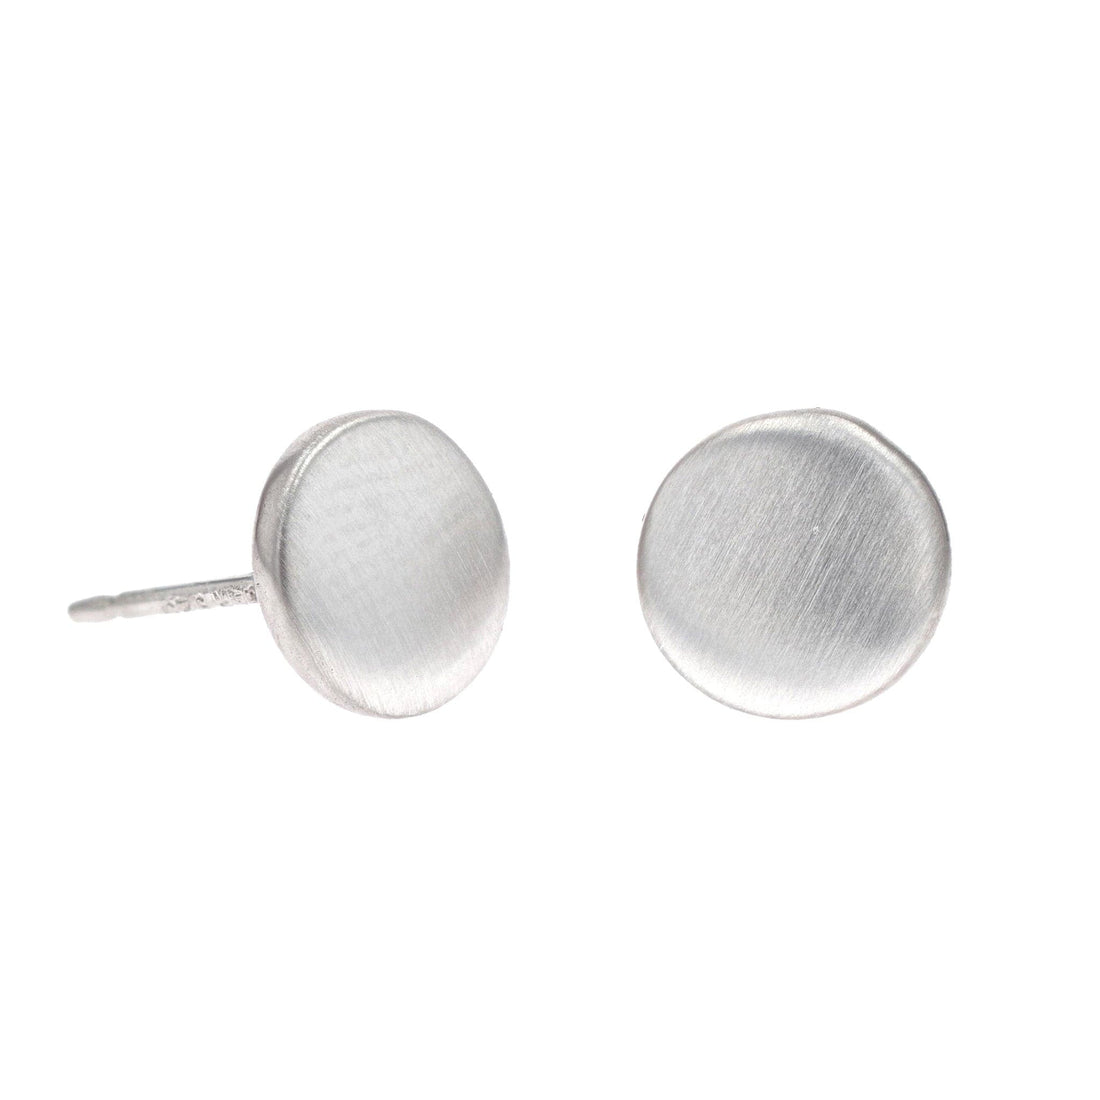 Satin Sterling Silver Flat Round Stud Earrings by Carla | Nancy B.